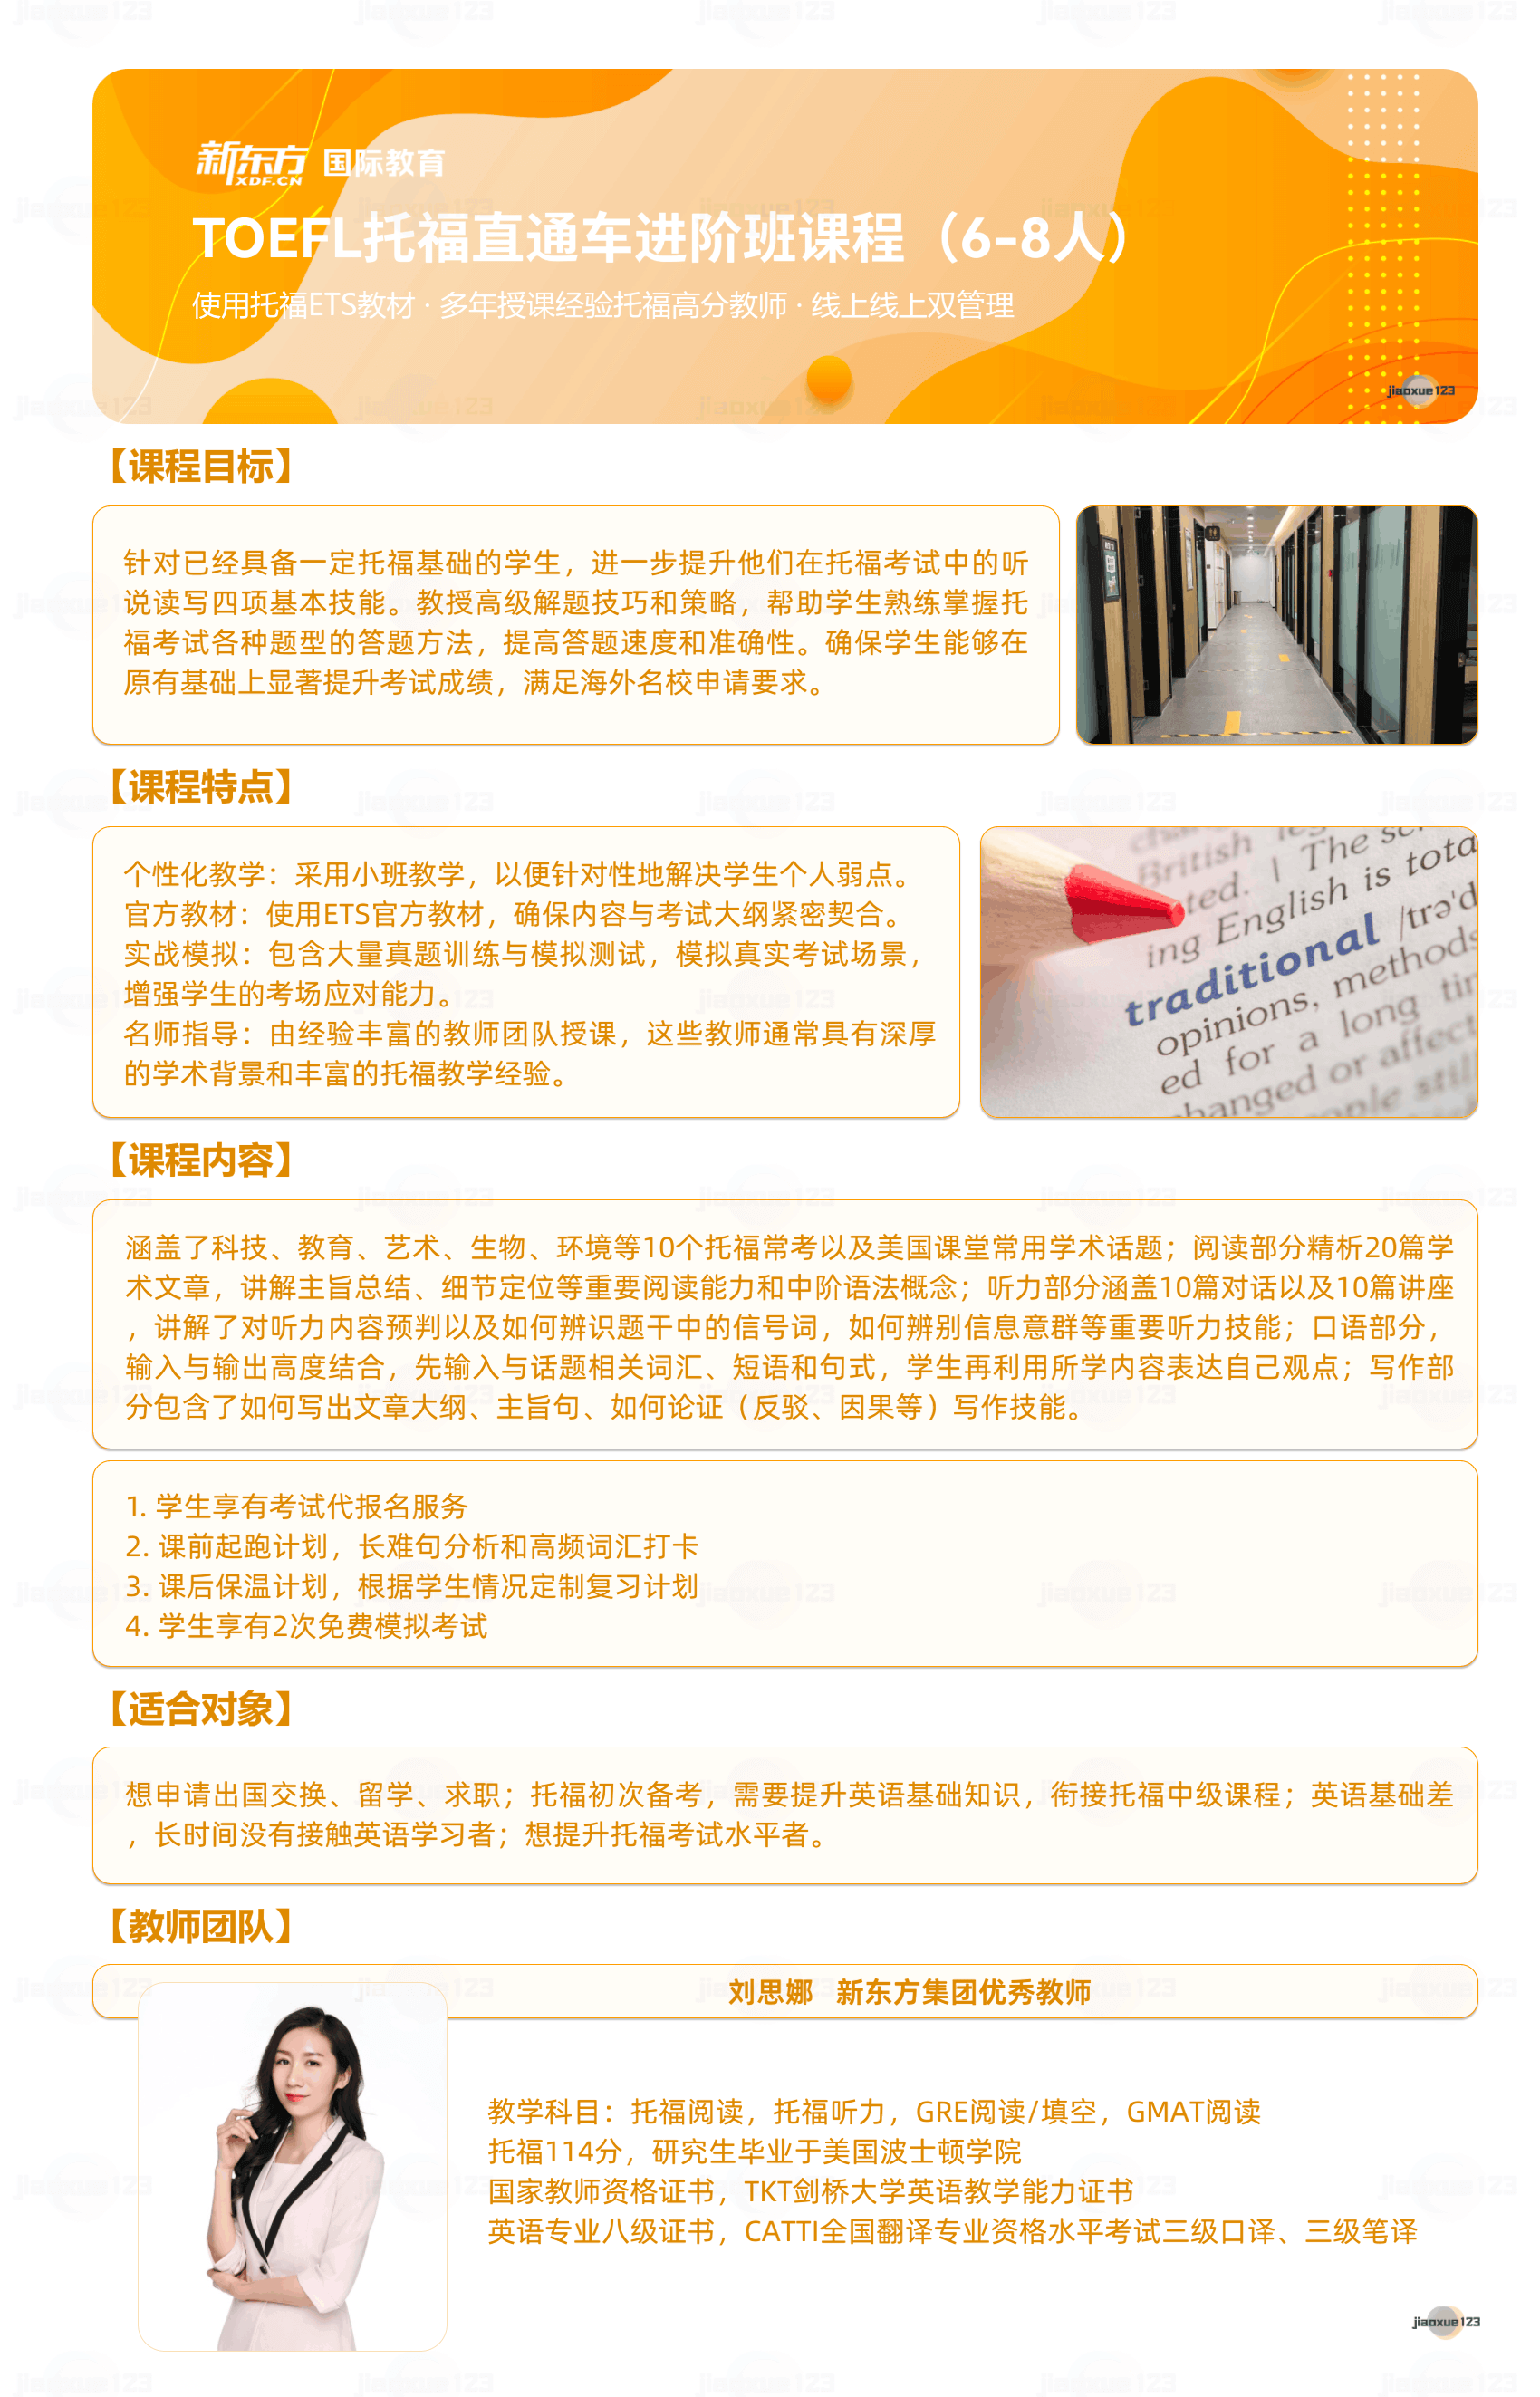 新东方-TOEFL托福直通车进阶班课程详情